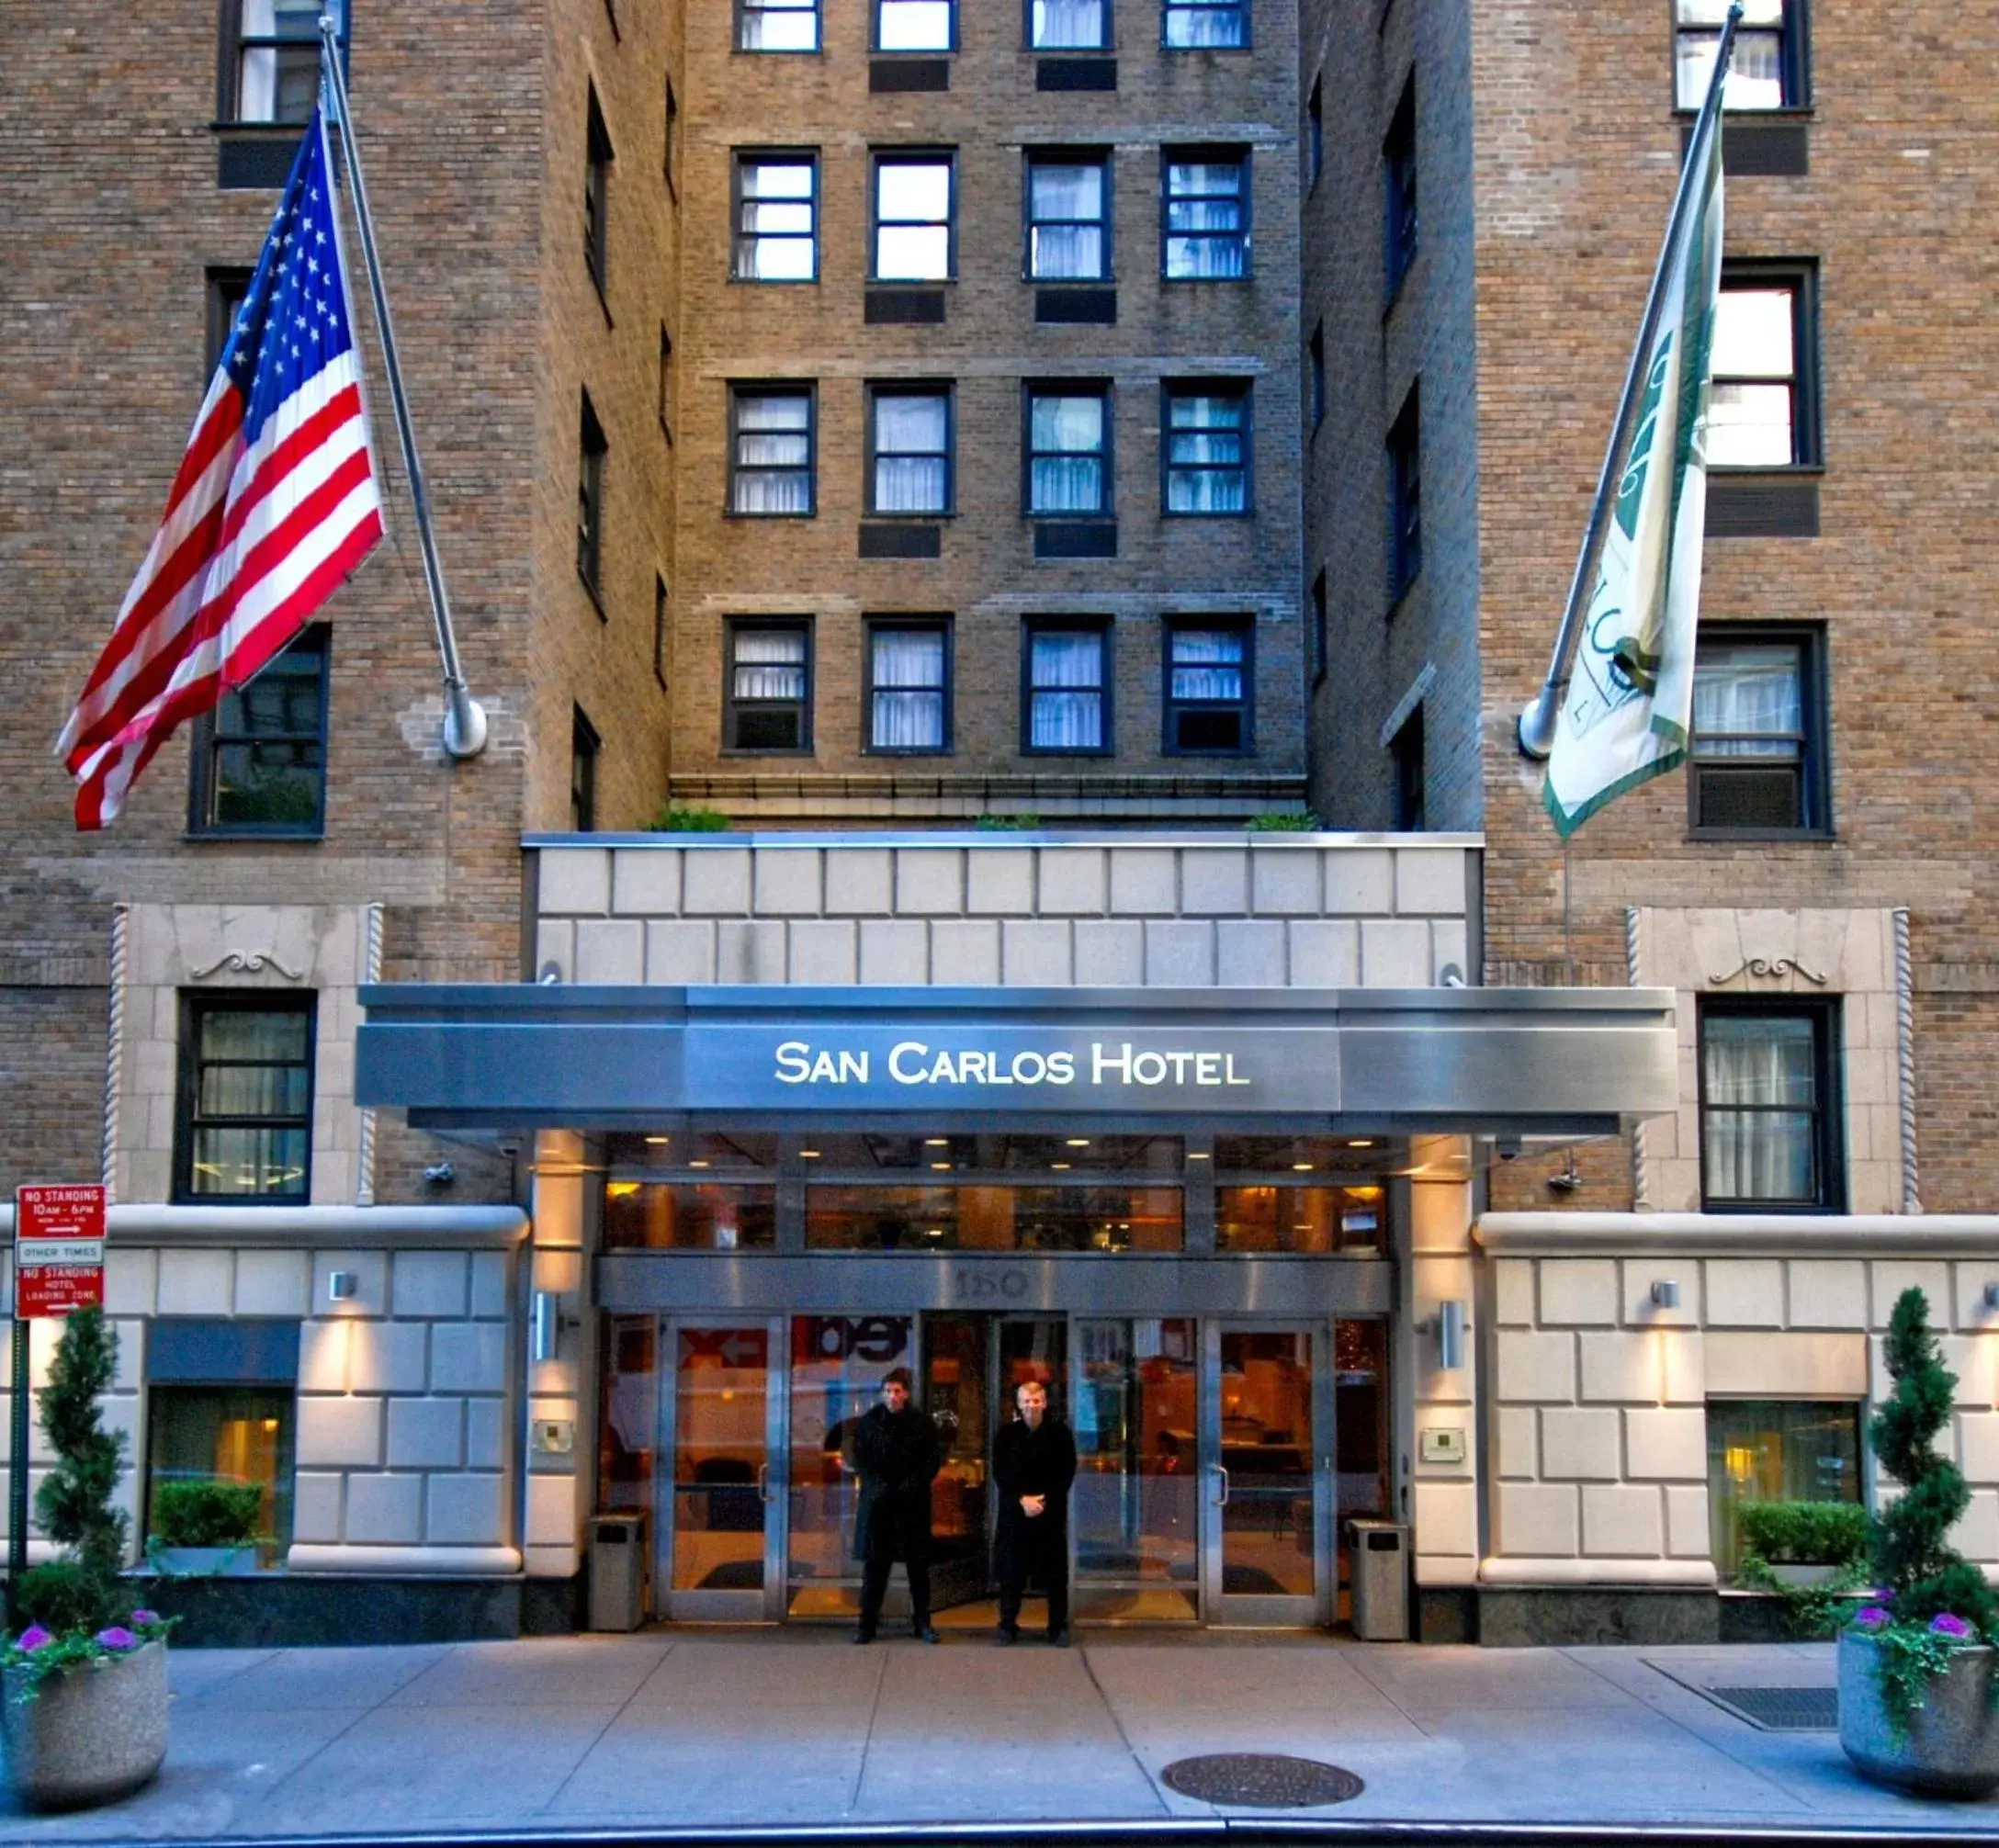 Facade/entrance, Property Building in San Carlos Hotel New York